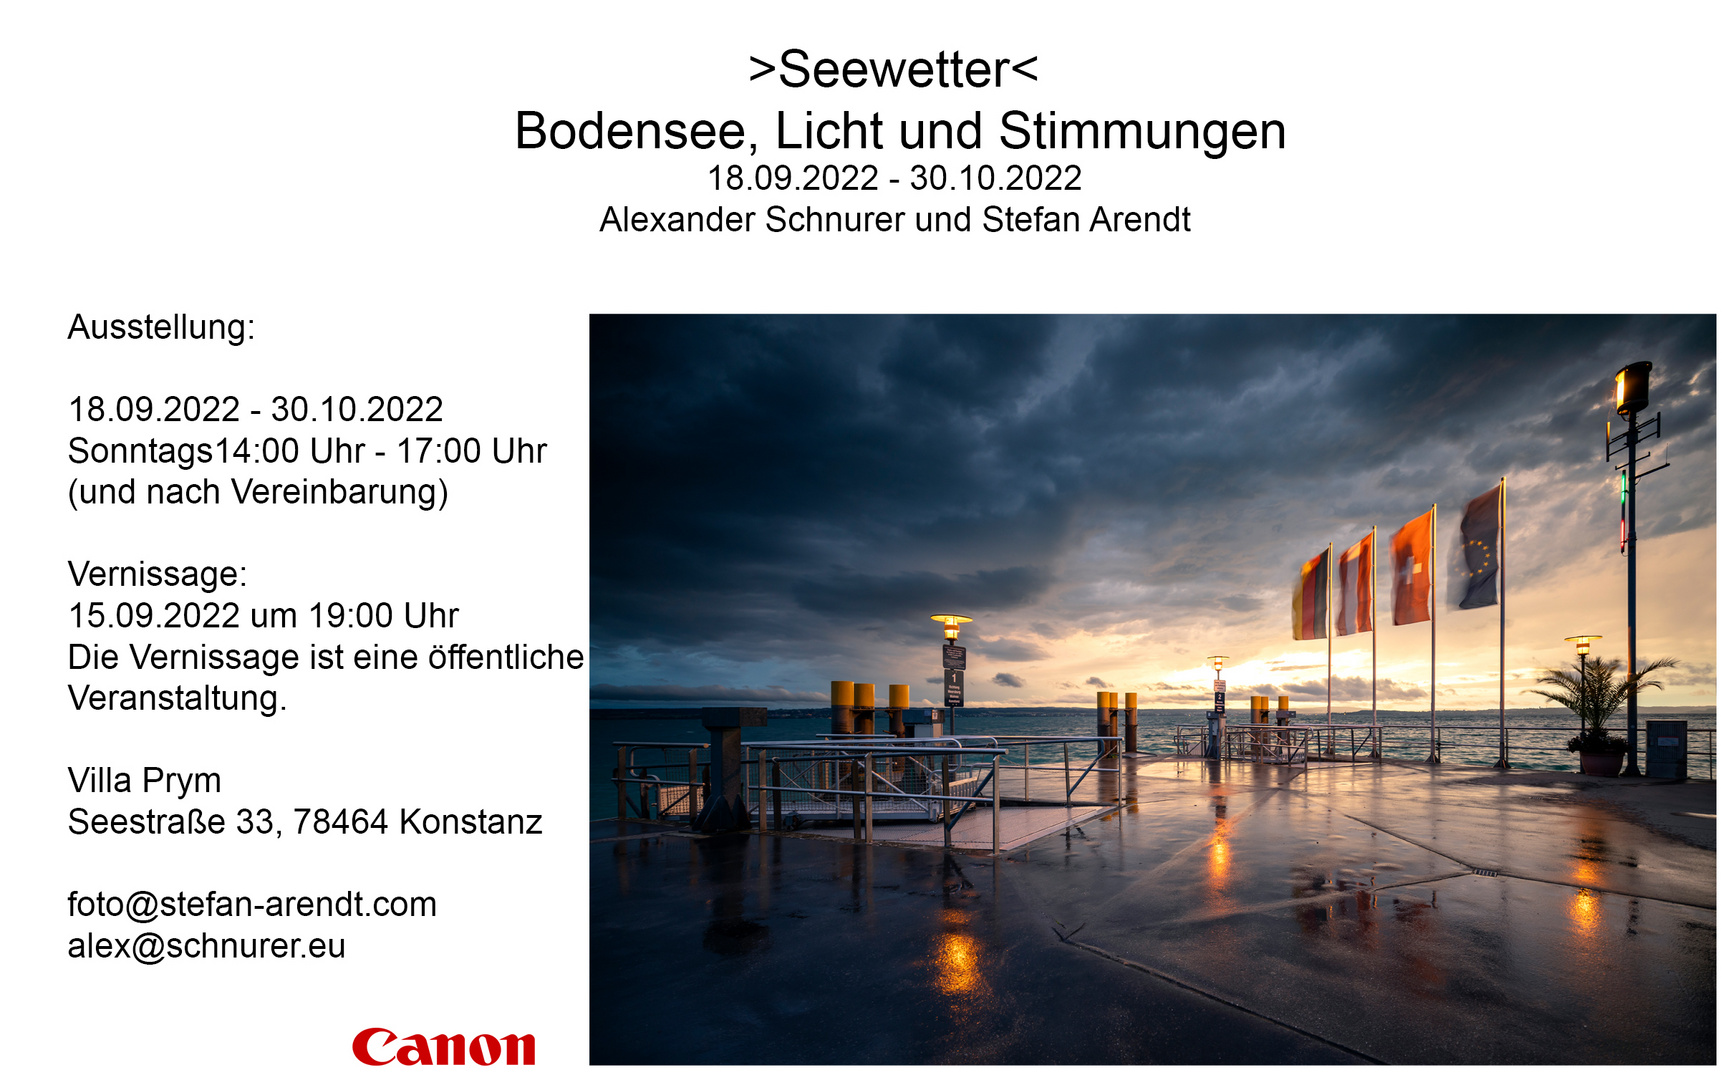 Seewetter - Bodensee, Licht und Stimmung